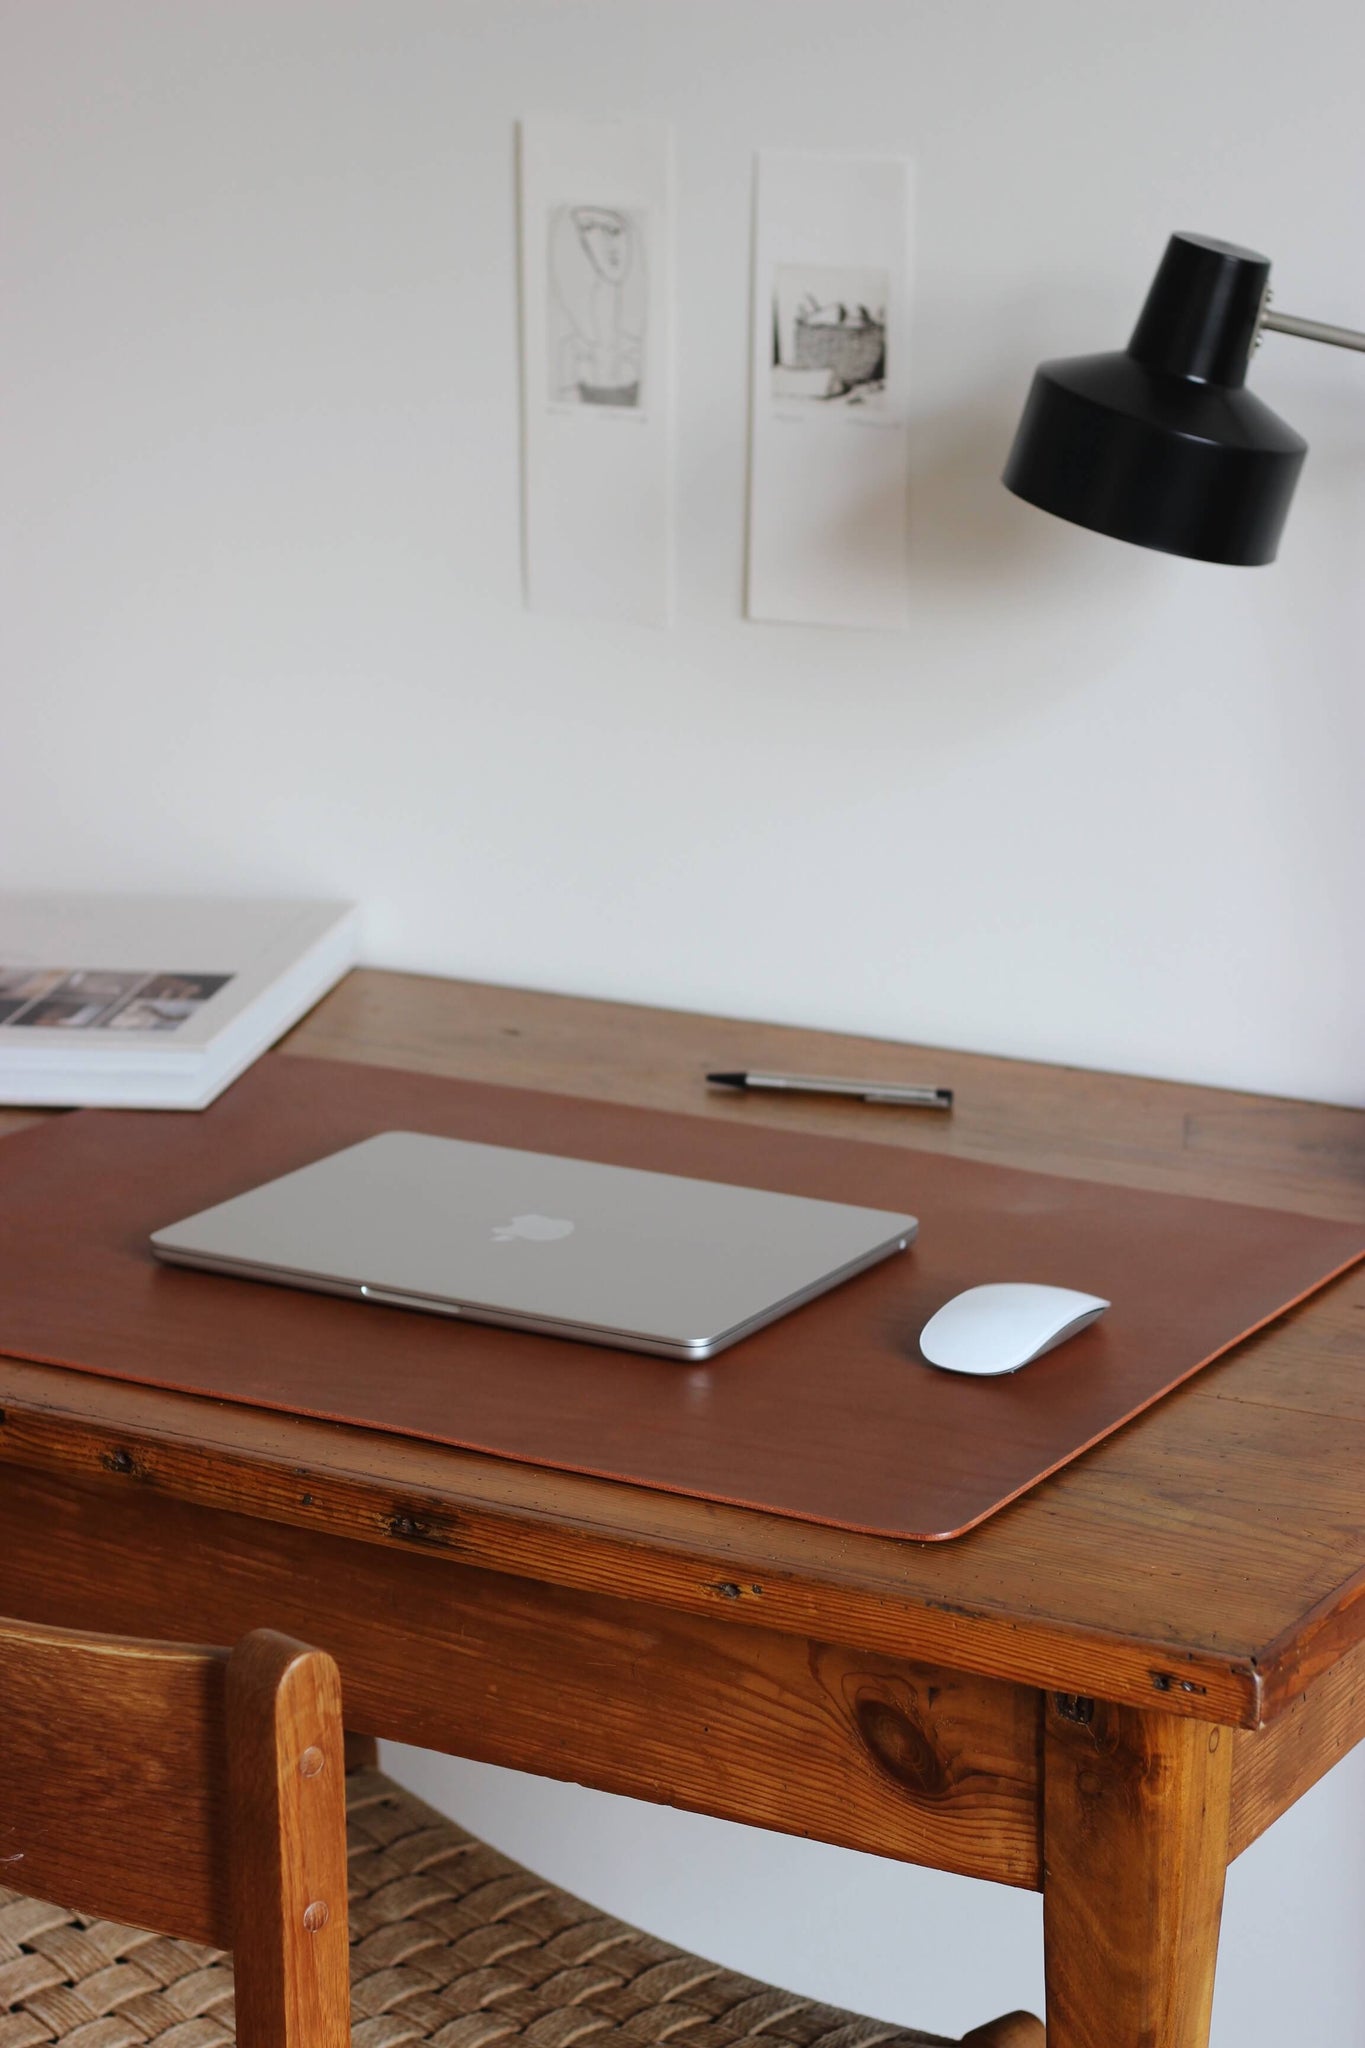 Seitliche Aufnahme einer Leder Schreibtischunterlage in Braun auf einem Schreibtisch.